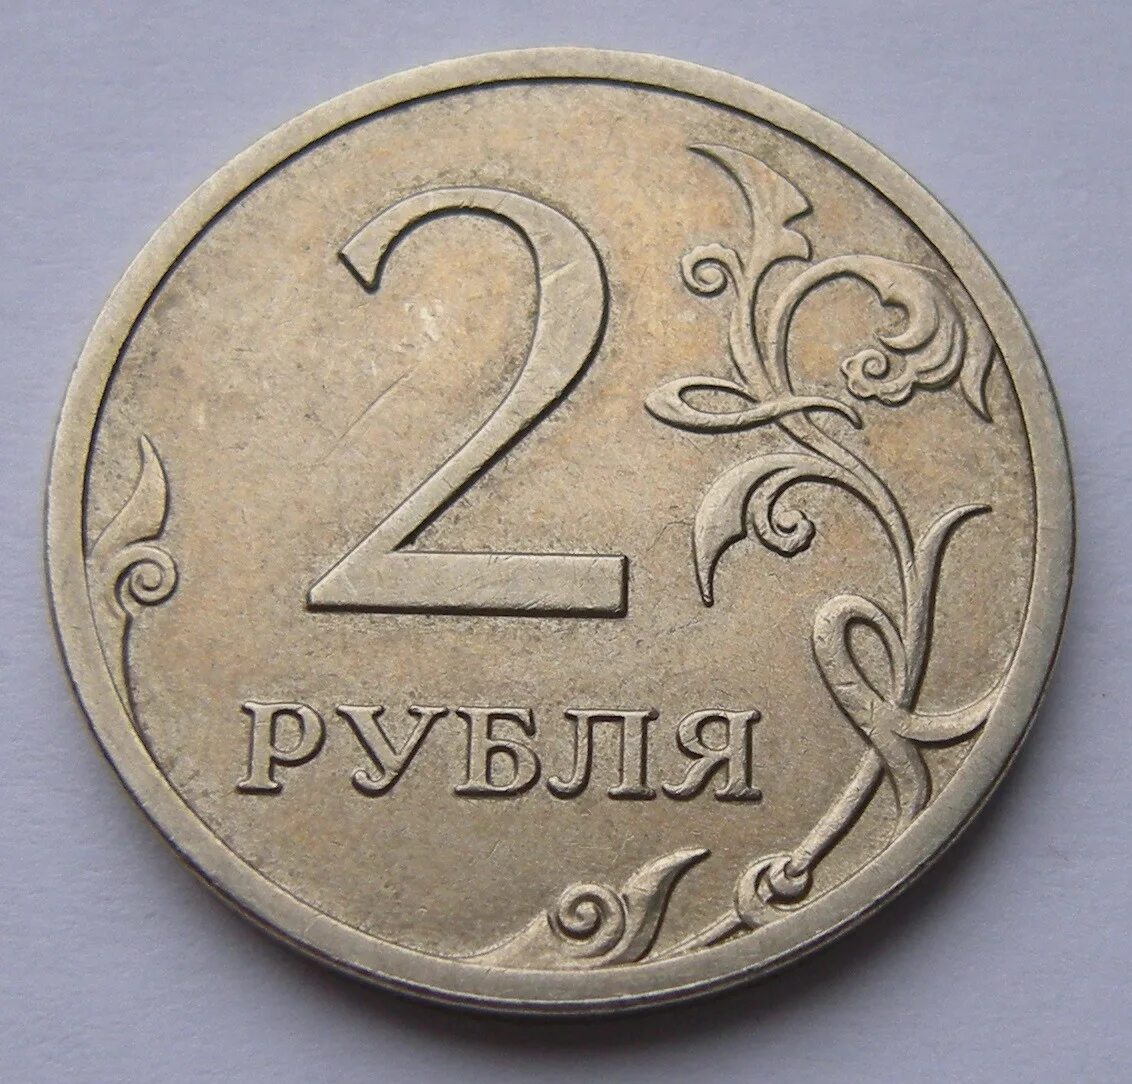 45 5 в рублях. Монета 2 рубля. Монеты 1 2 5 рублей. Изображение монет. Монеты 1 руб 2 руб.